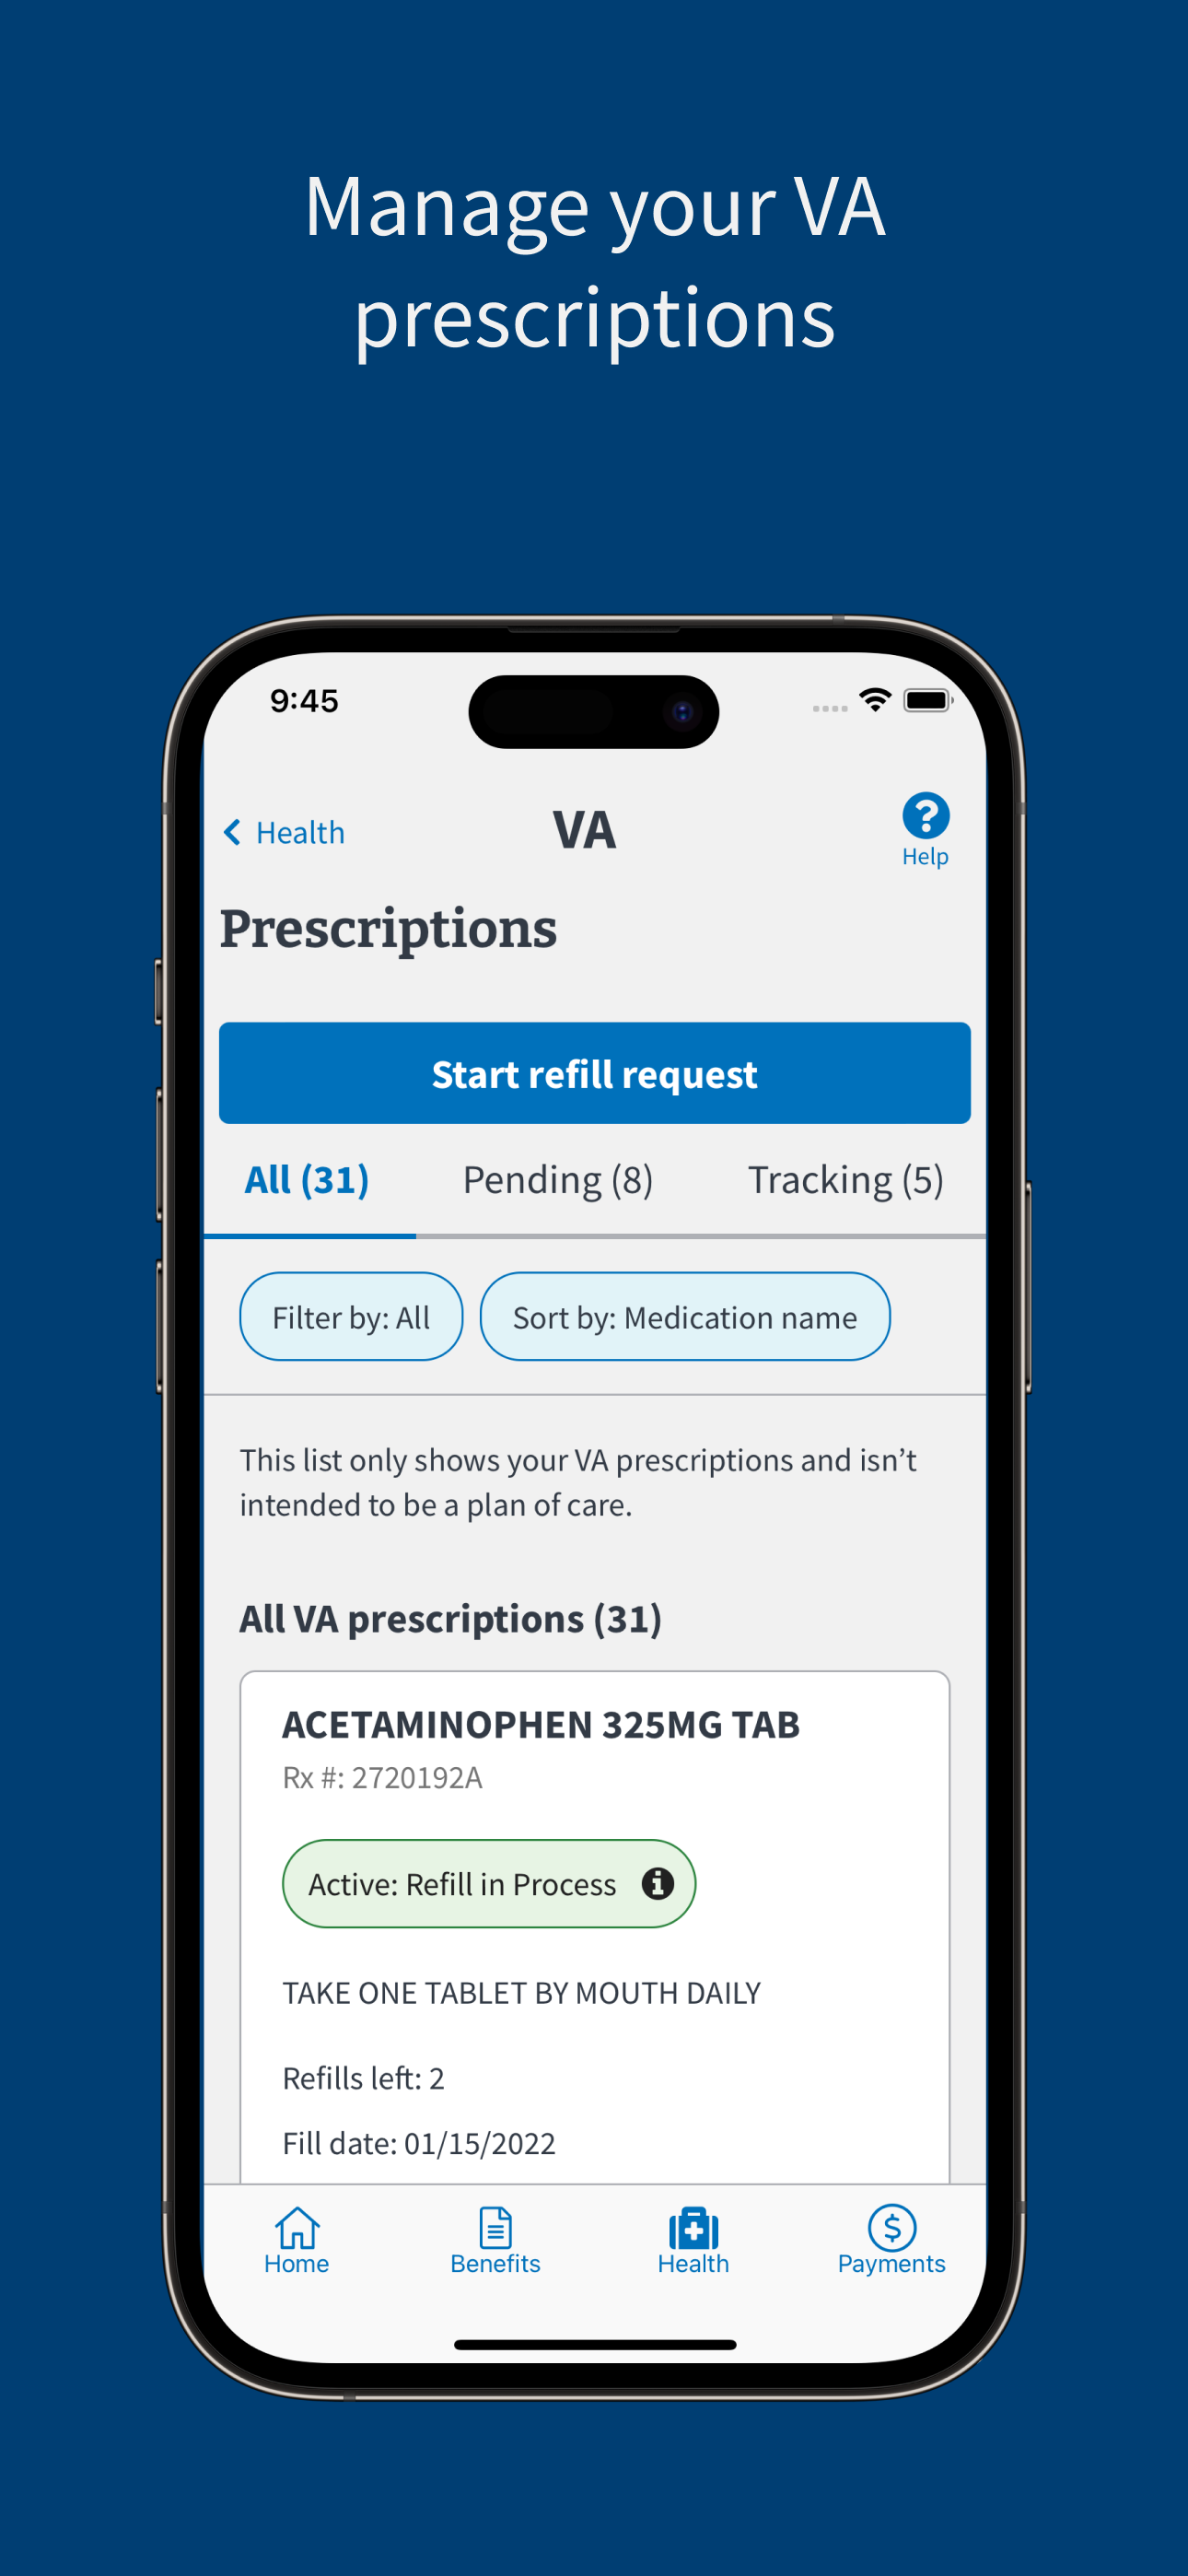 Manage your VA prescriptions